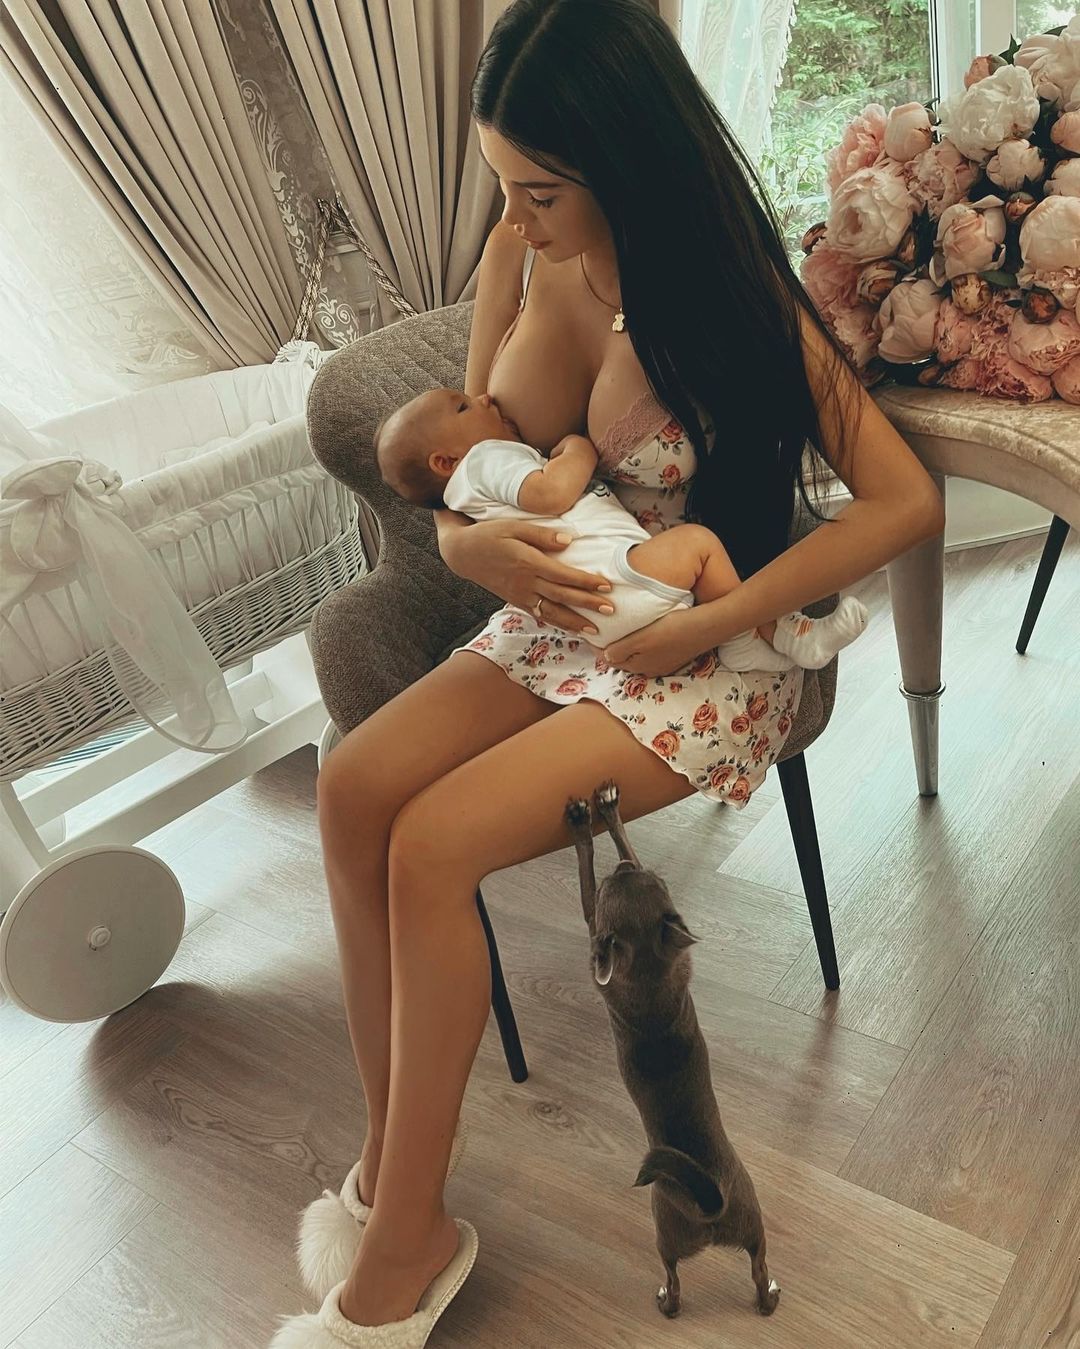 Популярную блогершу раскритиковали за слишком откровенные фото кормления младенца